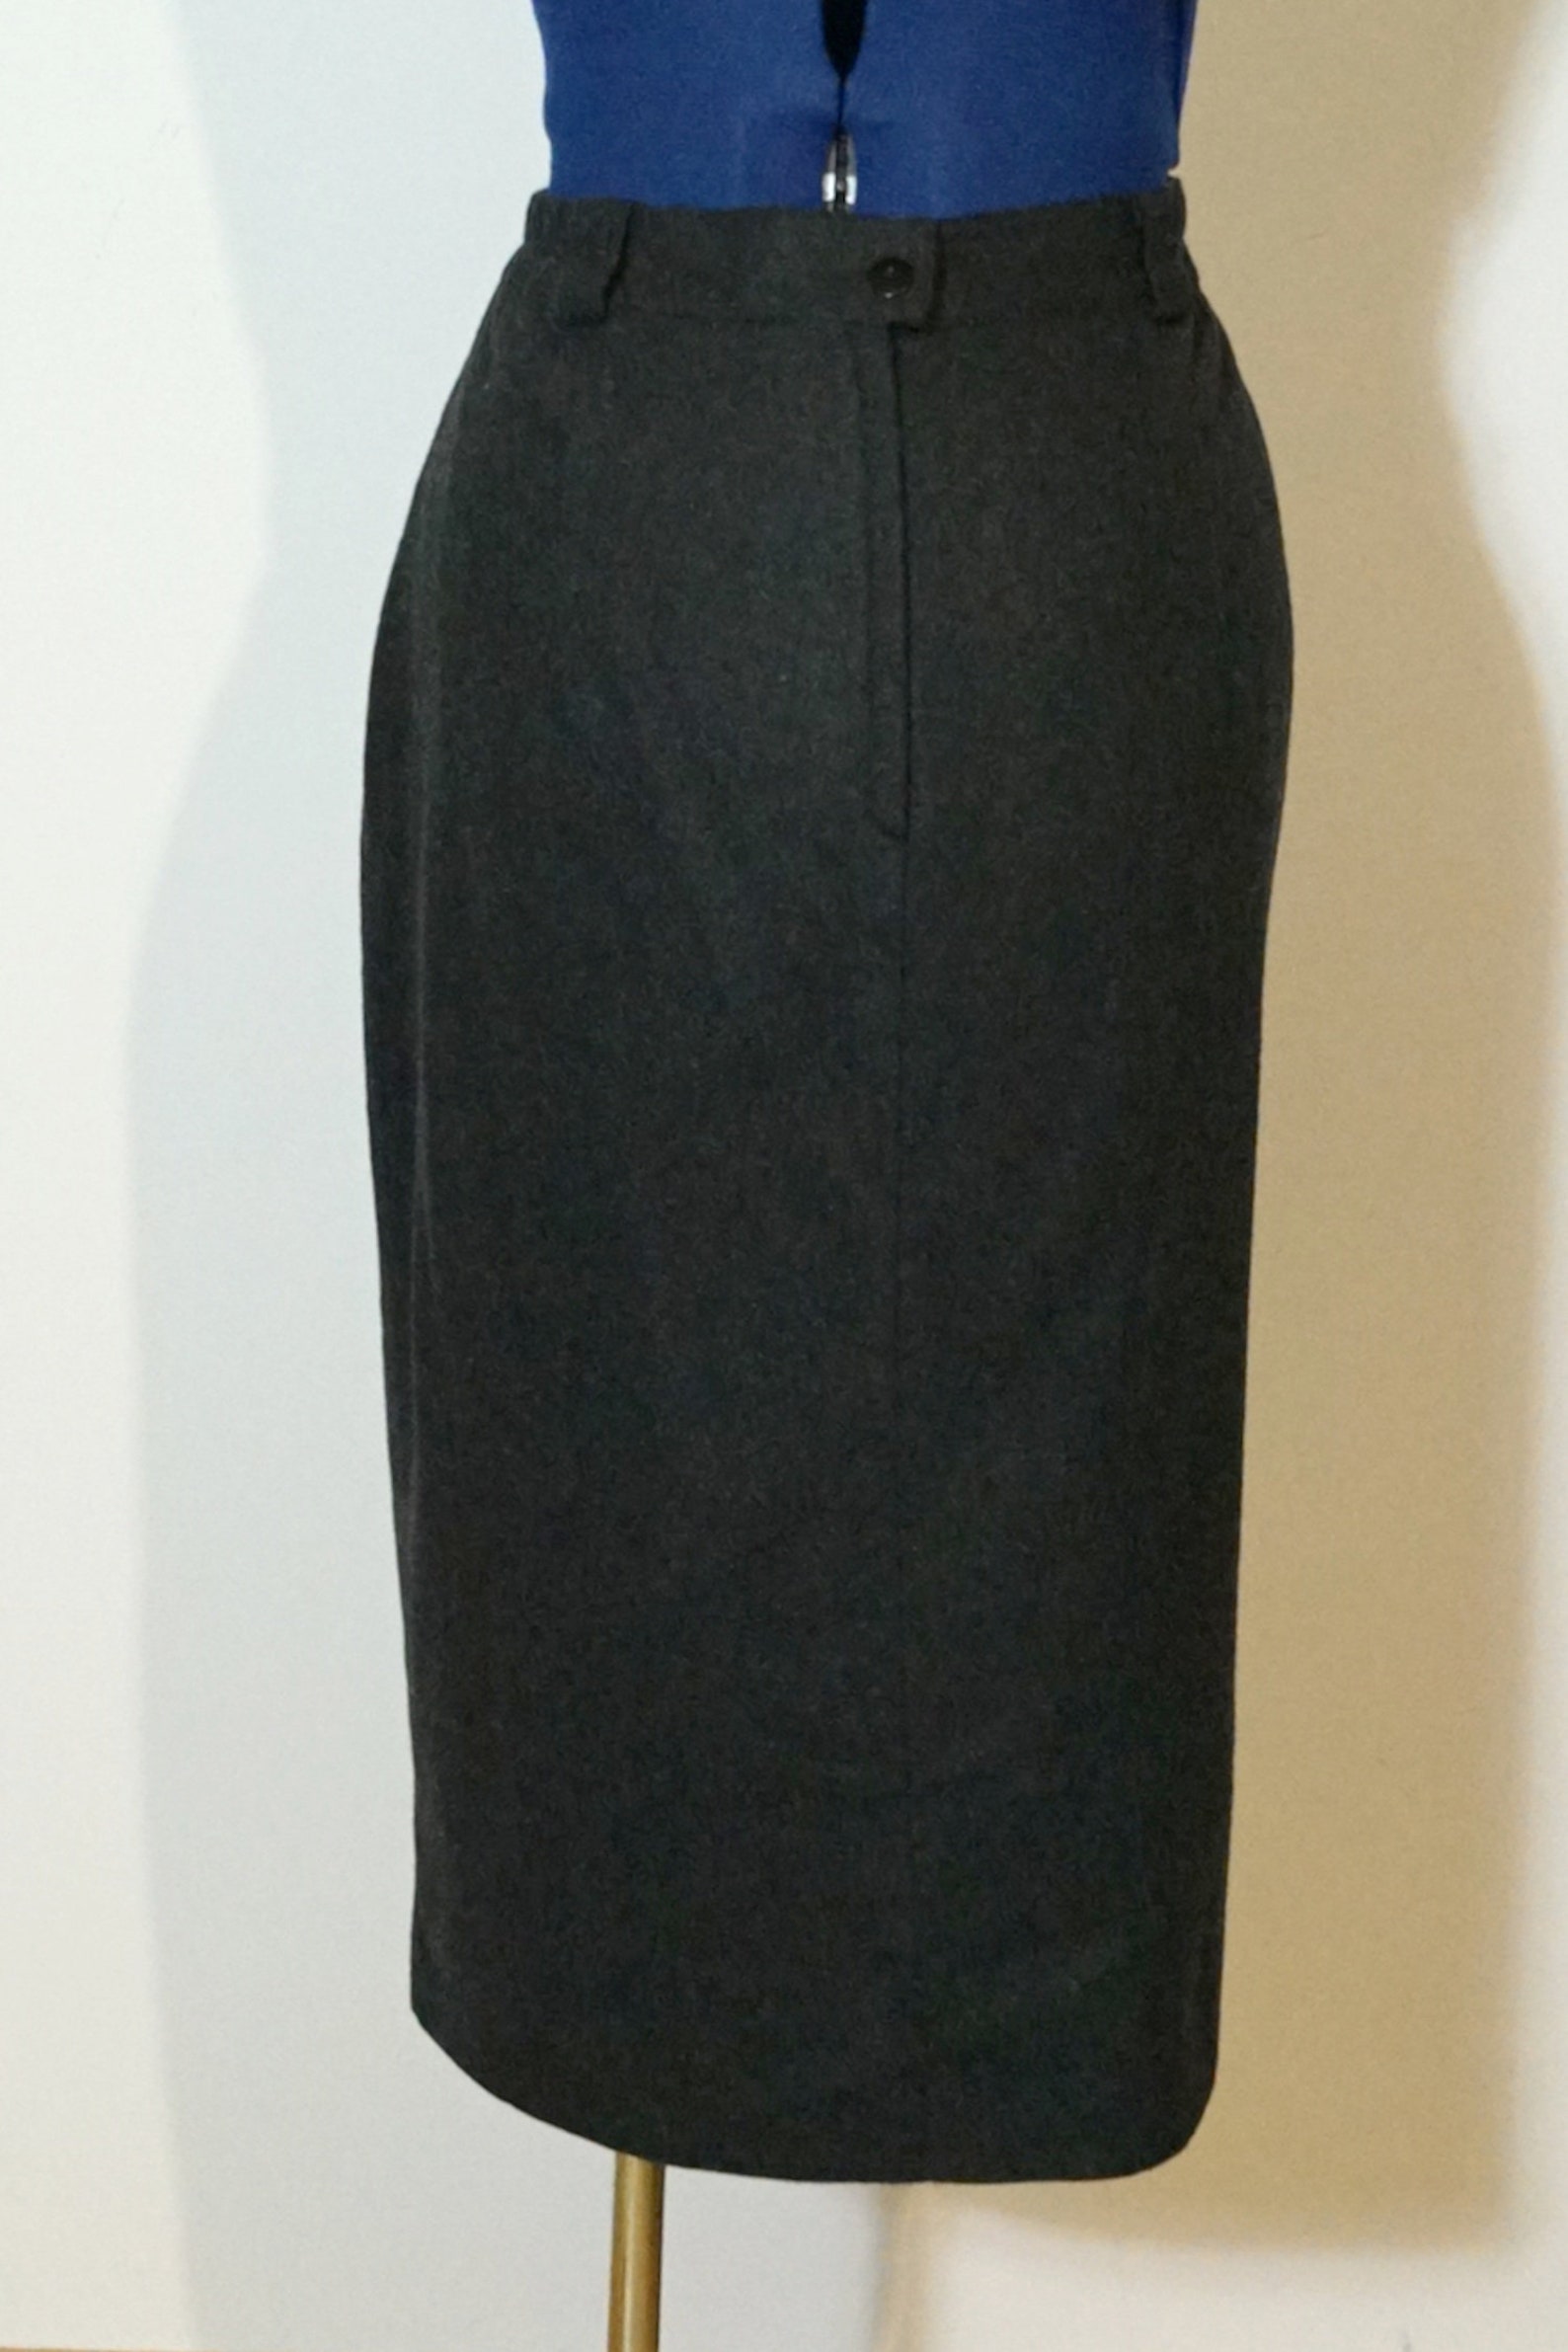 Dirndl Loden Skirt Black Loden Skirt Country Style Skirt | Etsy